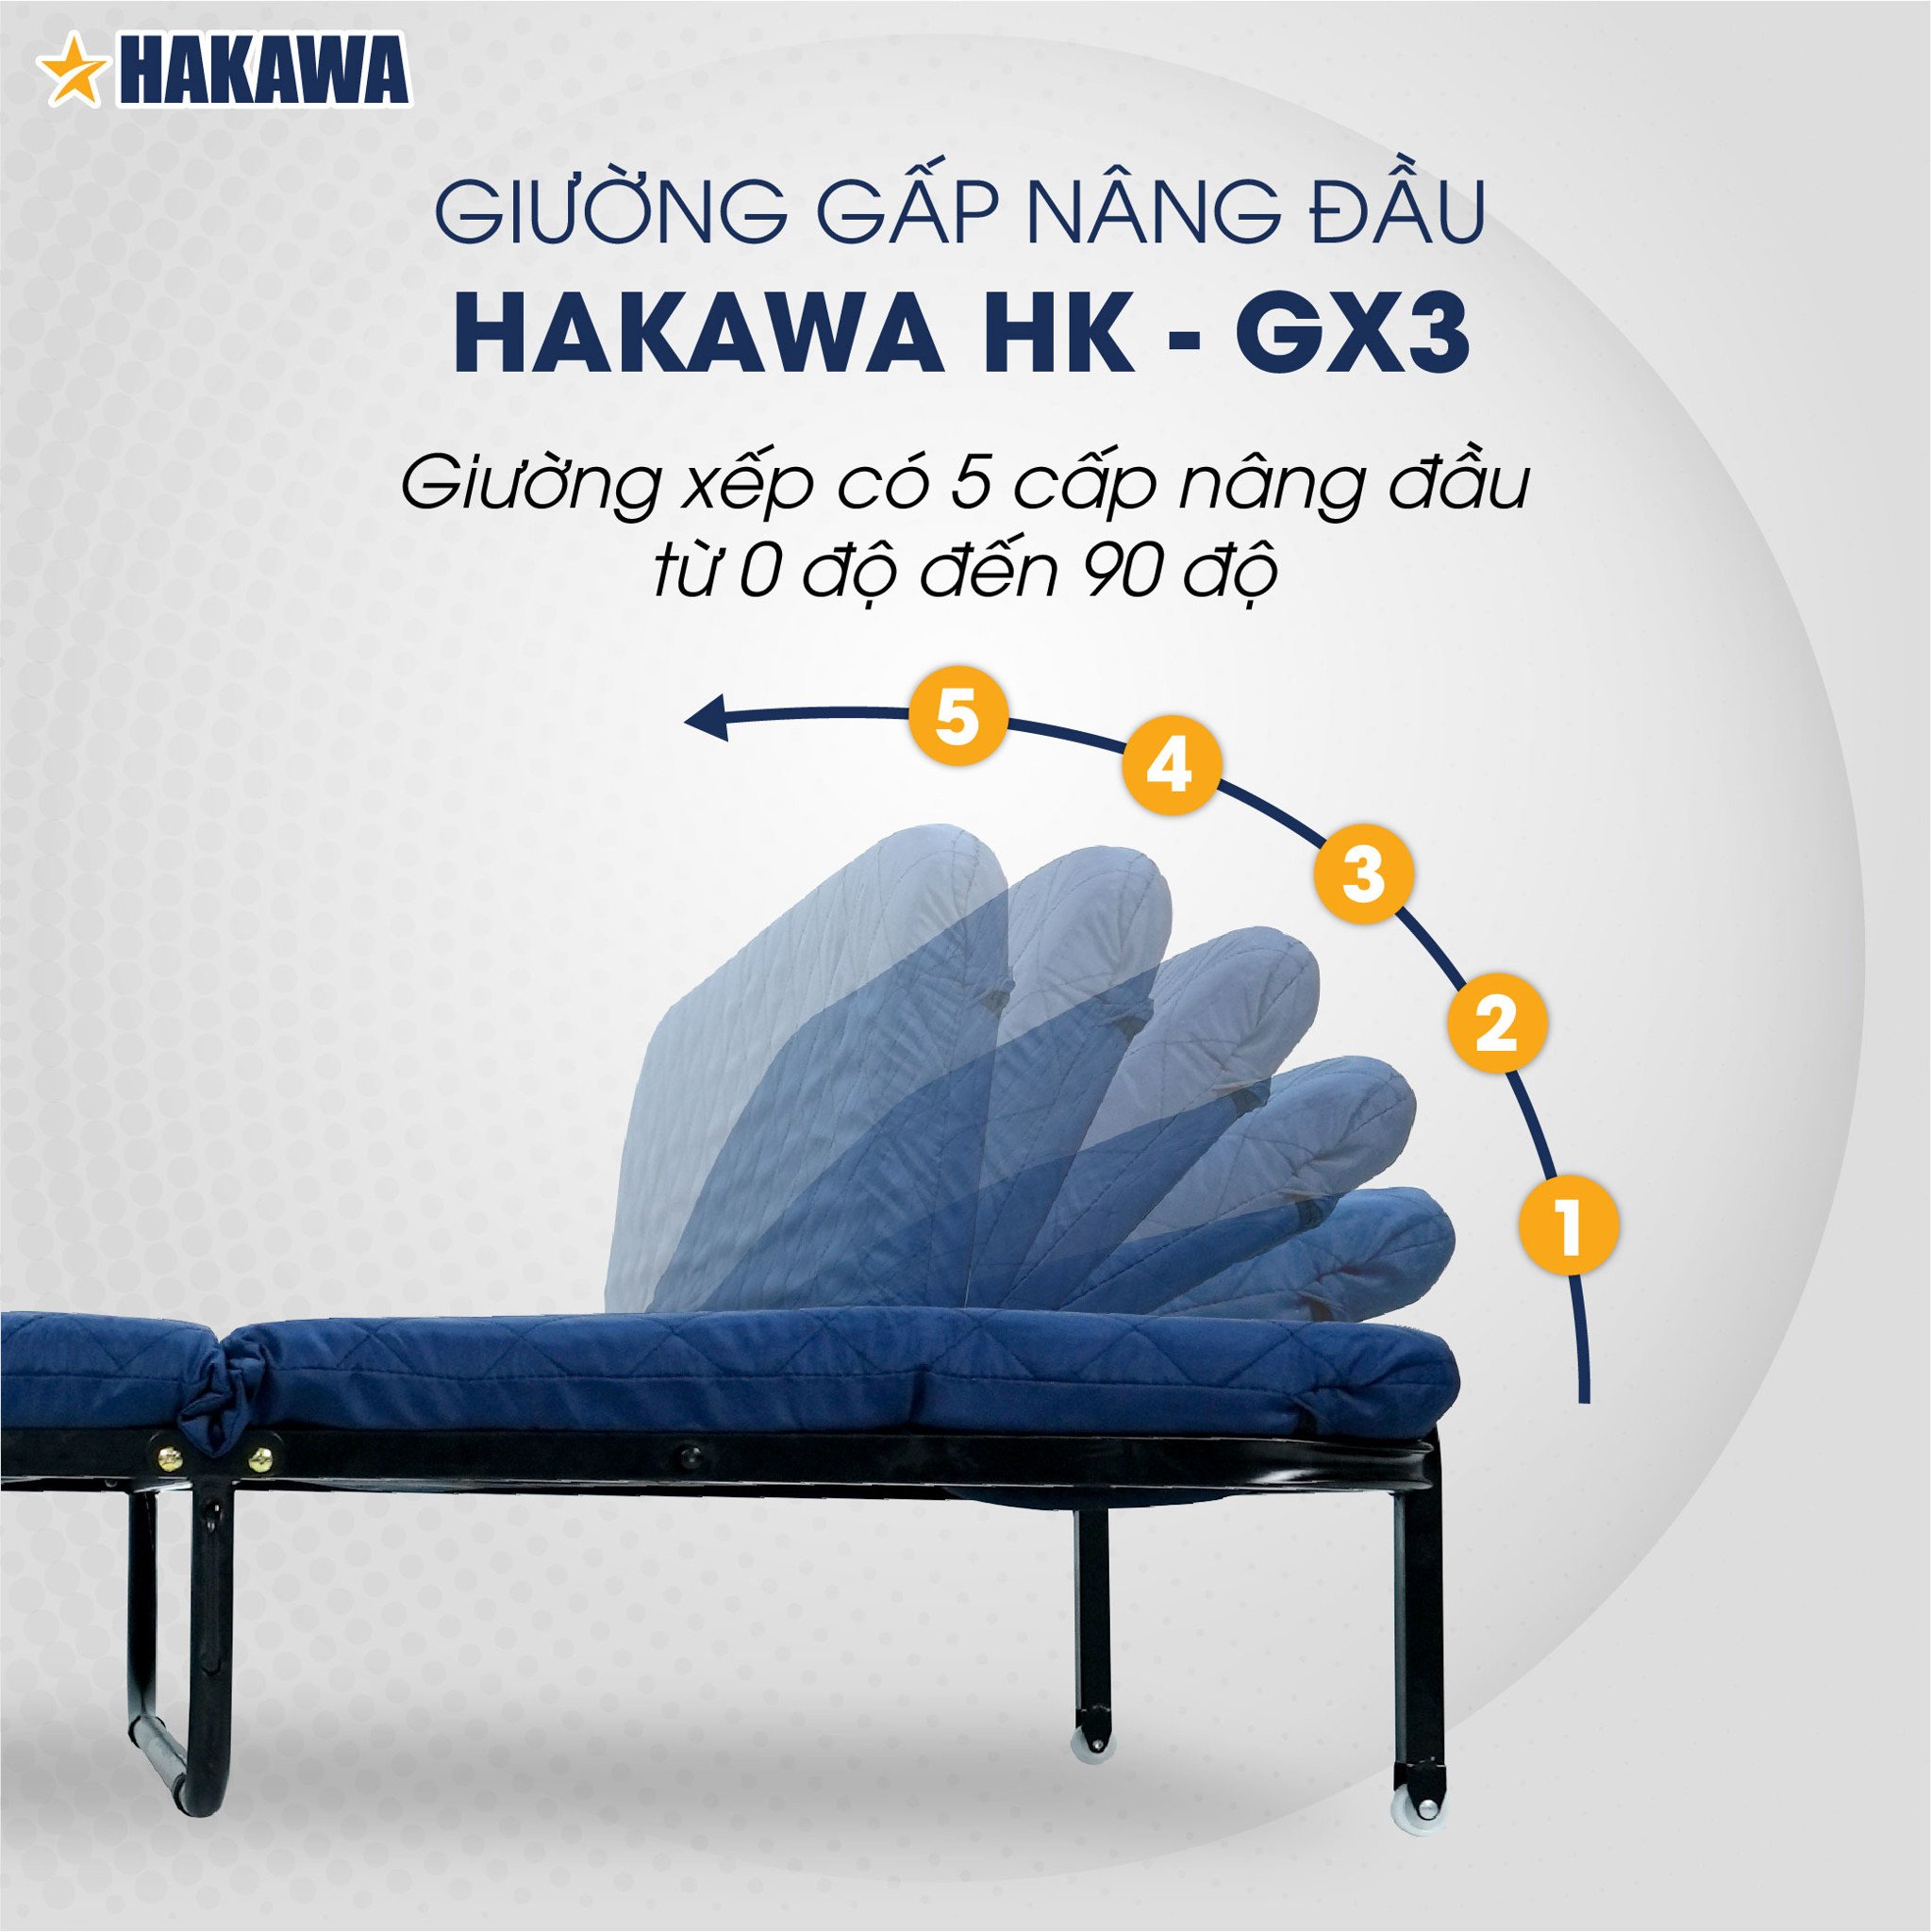 GIường gấp HAKAWA HK-GX3 có 5 cấp nâng đầu tại điểm ngồi tựa từ 0 độ đến 90 độ vô cùng thoải mái